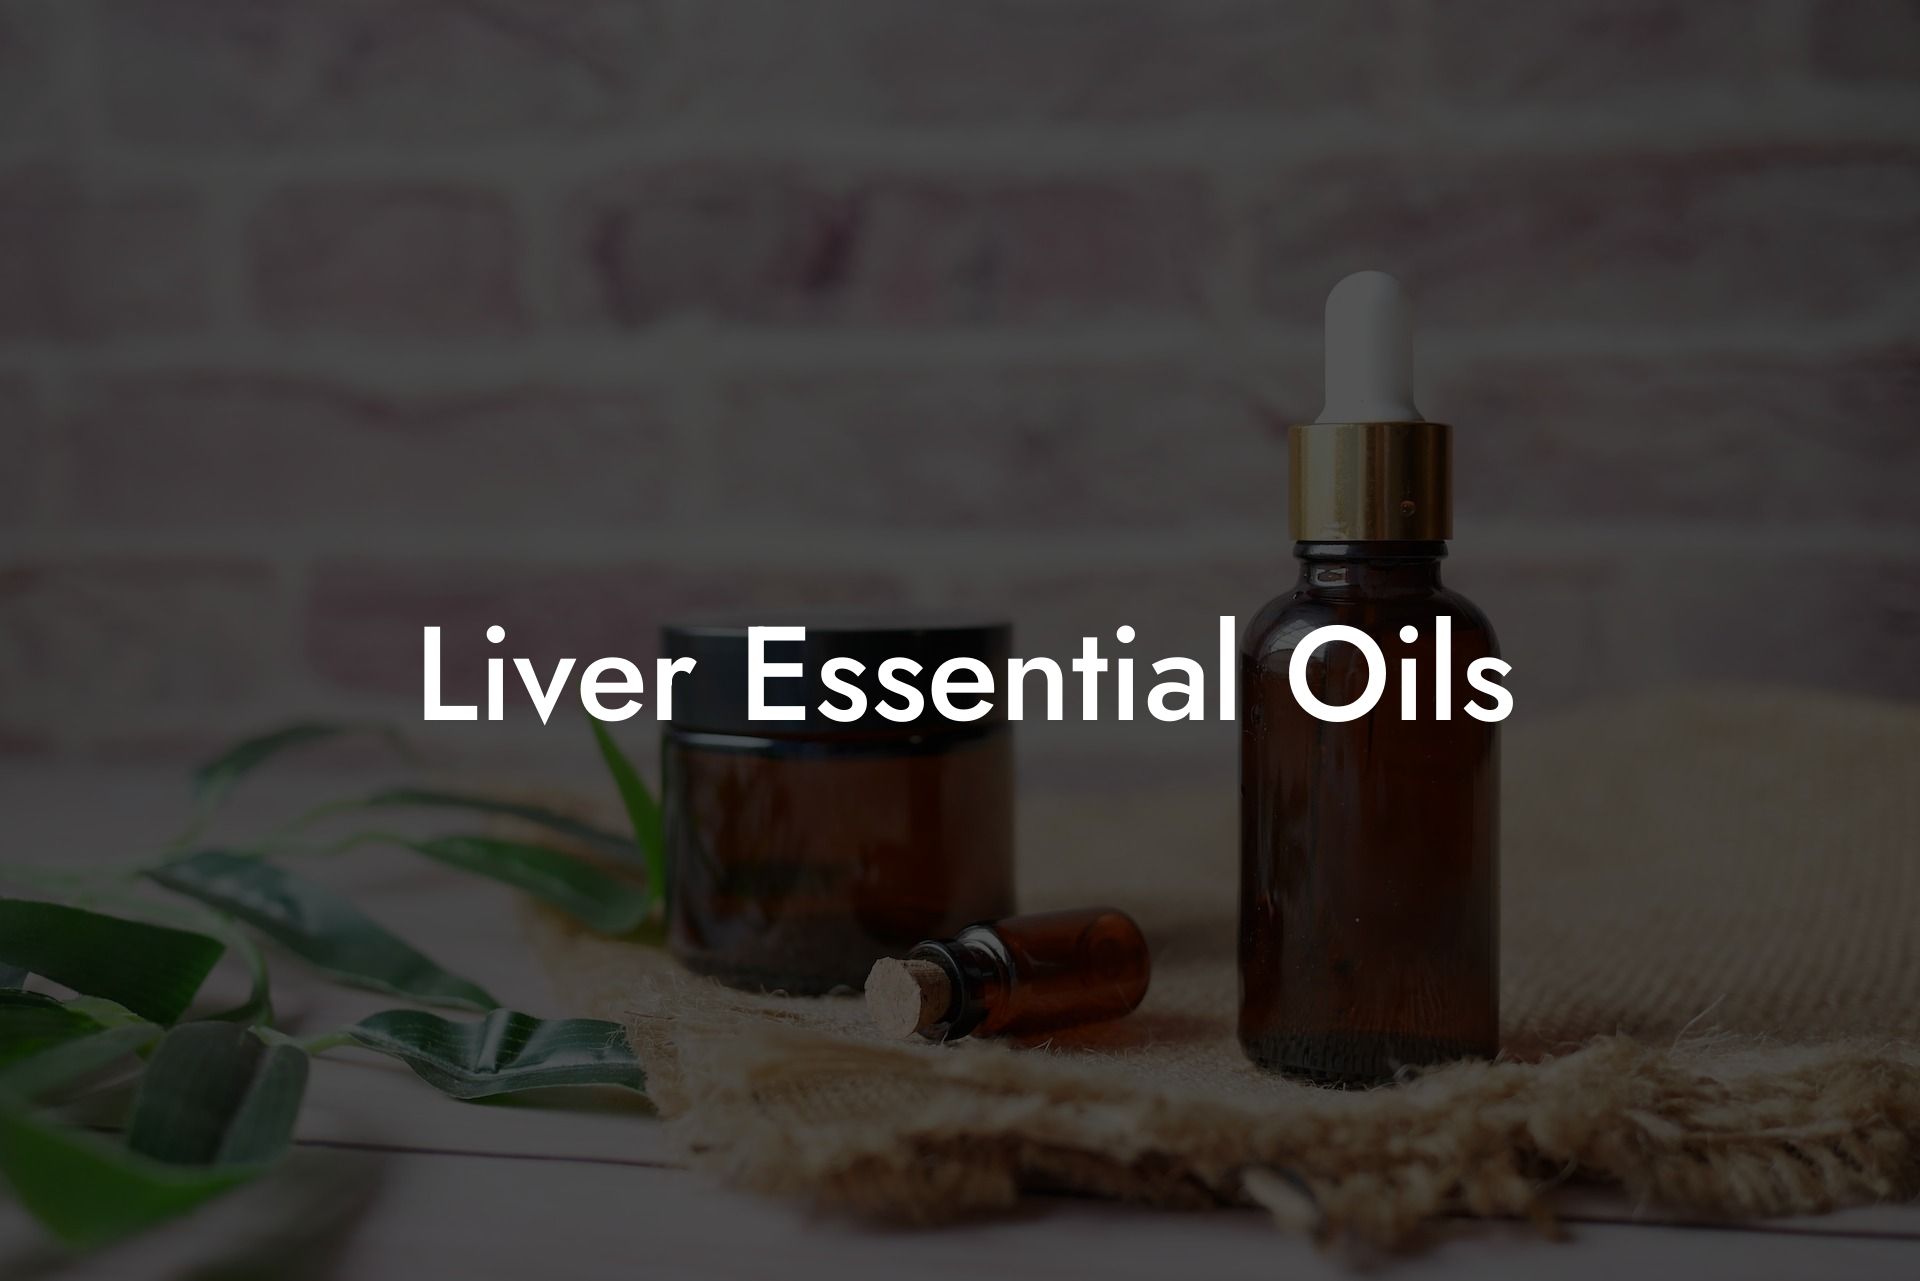 Liver Essential Oils